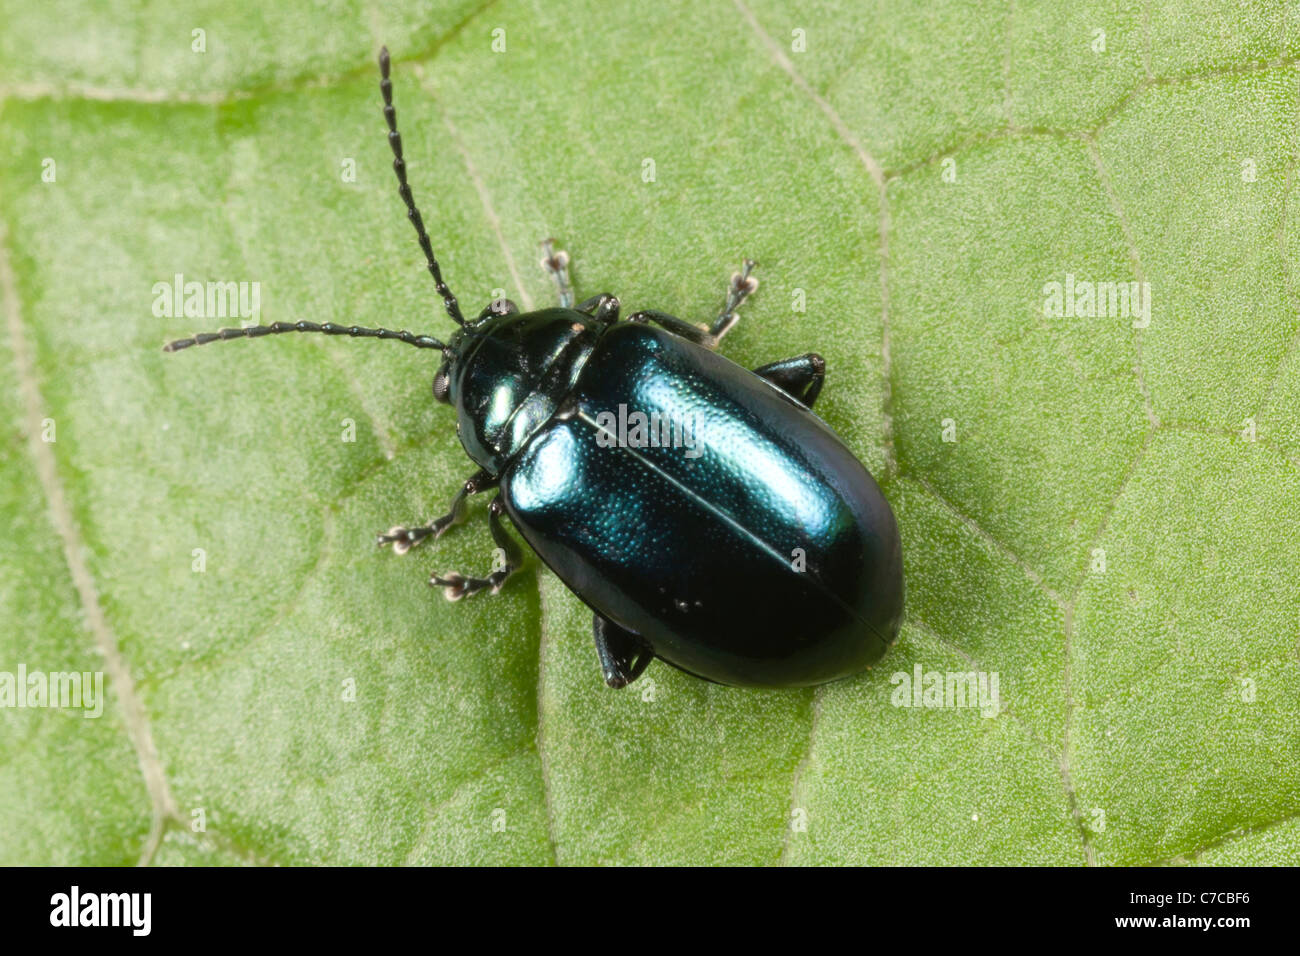 Flea scarabeo immagini e fotografie stock ad alta risoluzione - Alamy